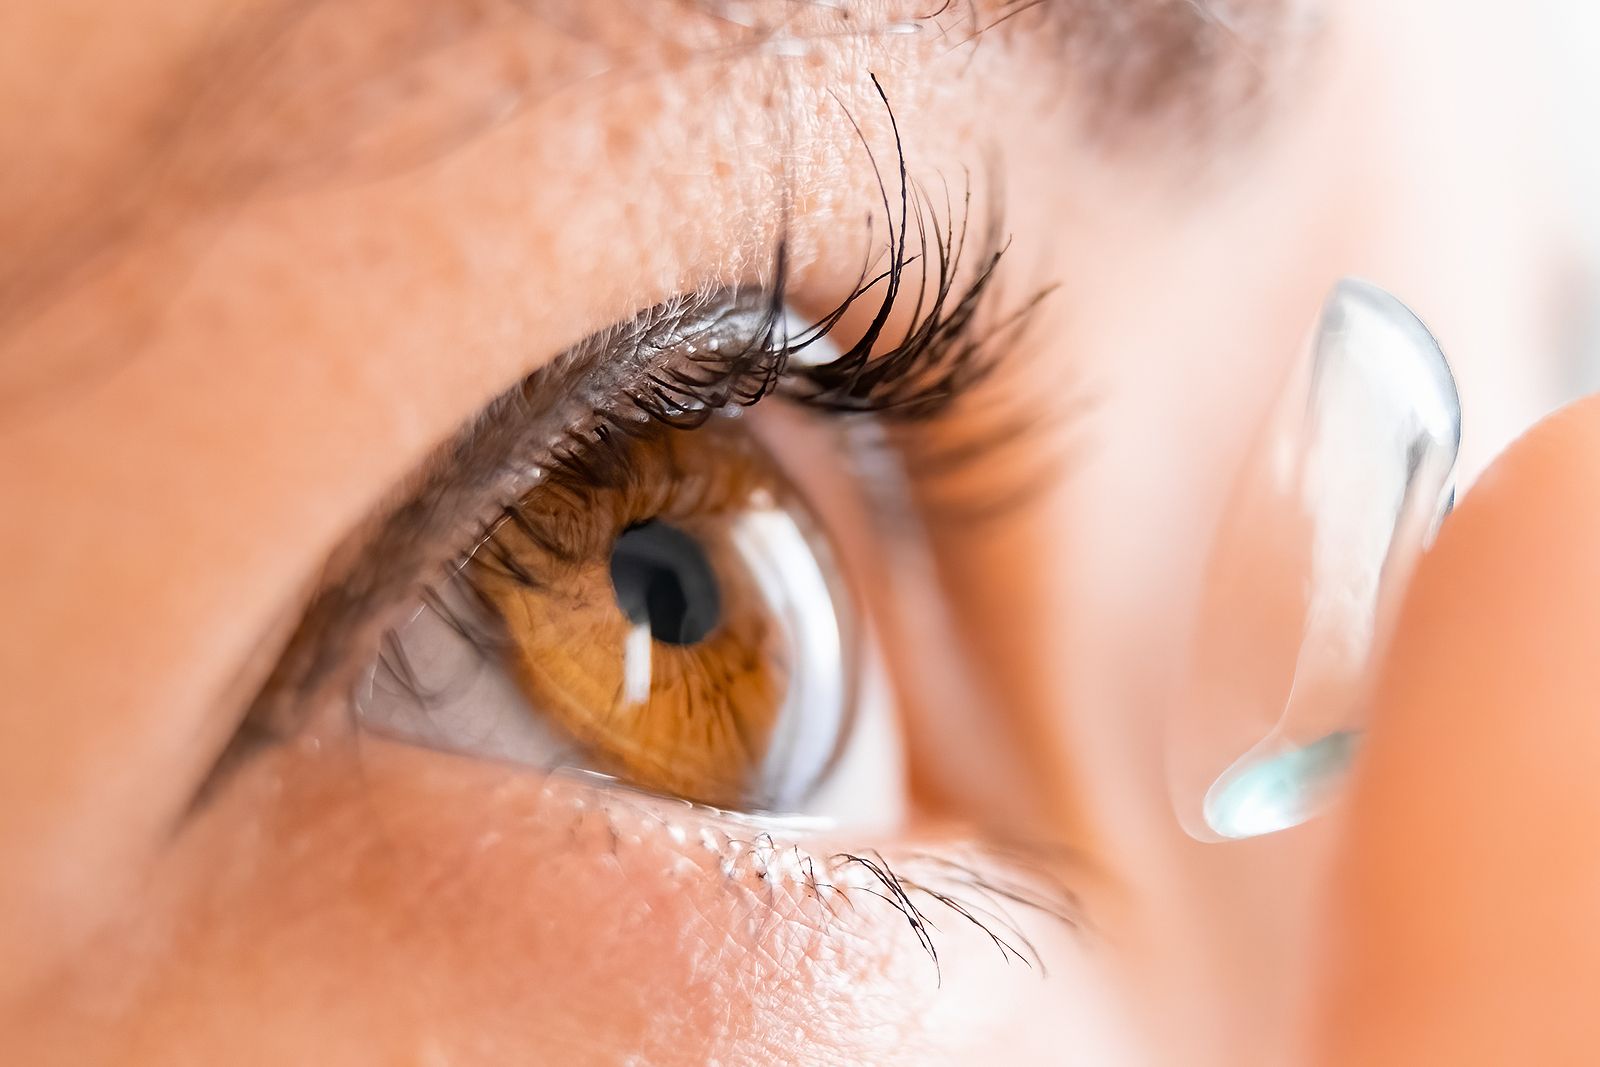 Oro para diagnosticar una patología ocular asociada al mal uso de lentillas